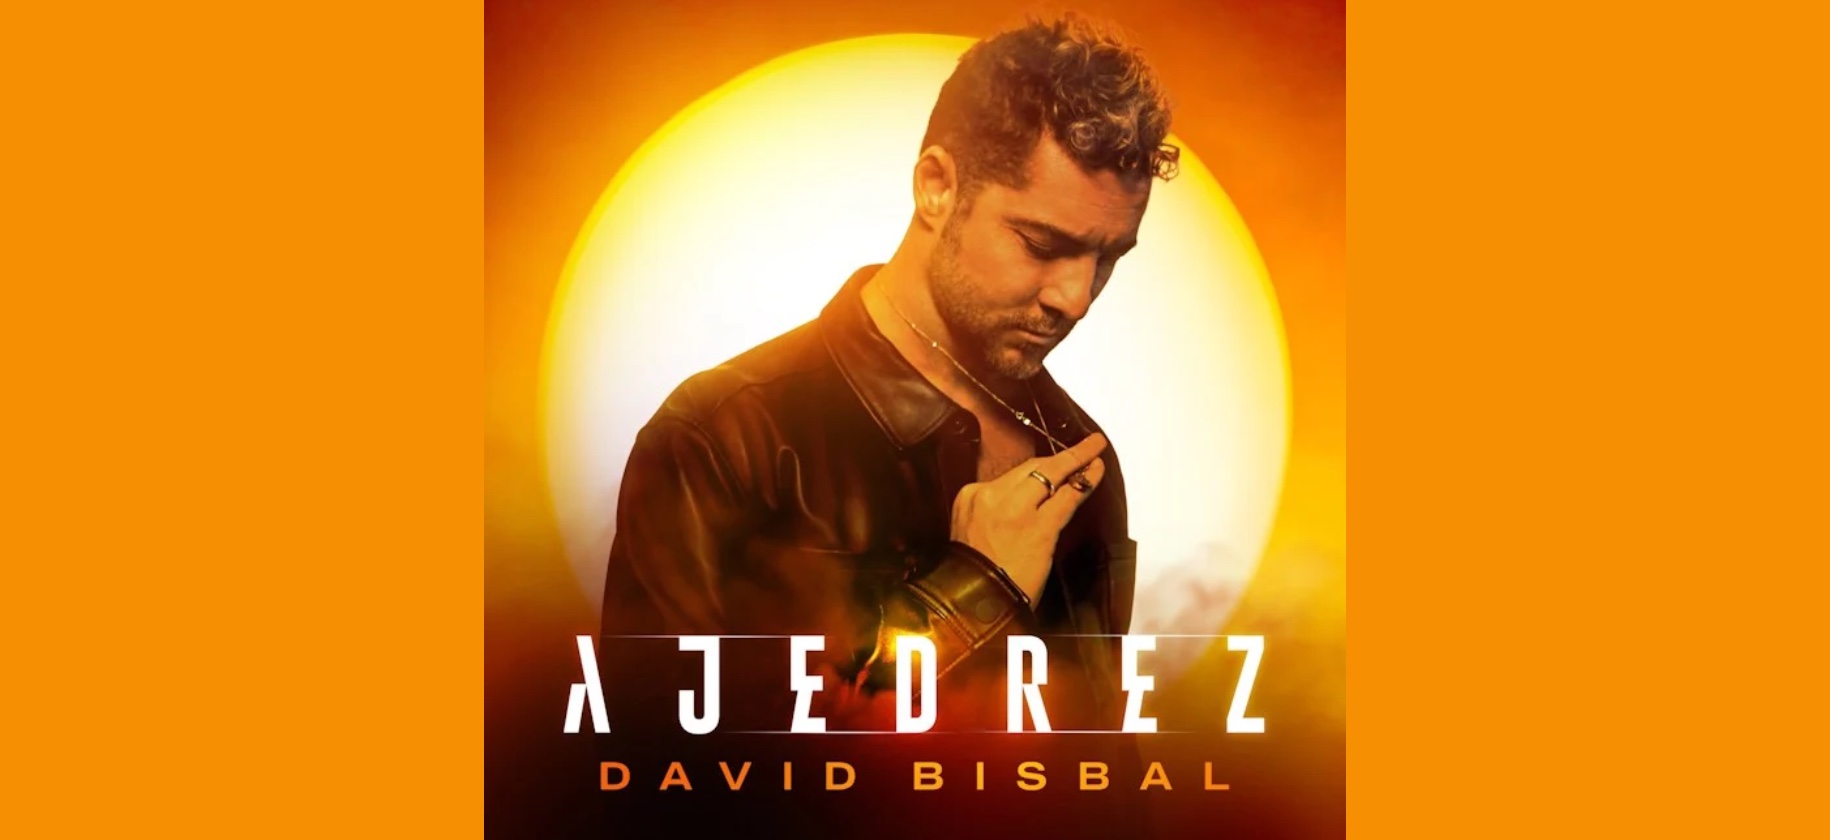 DAVID BISBAL inicia el 2023 con una nueva canción: Ajedrez, un juego  melódico de sonido exquisito que se fusiona con su potente y arrollado voz  - David Bisbal